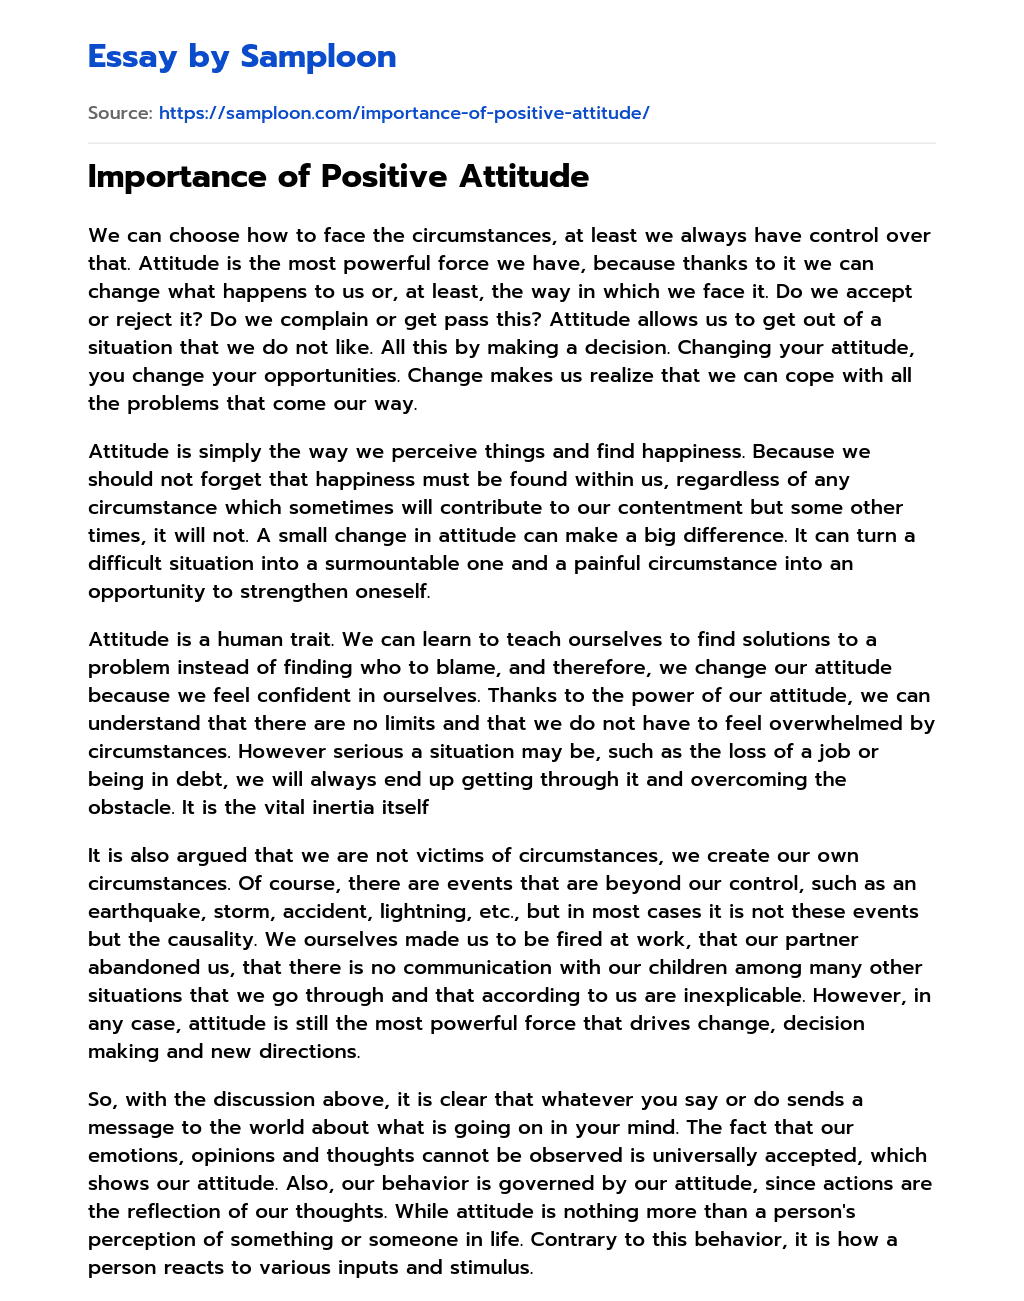 optimistic attitude essay